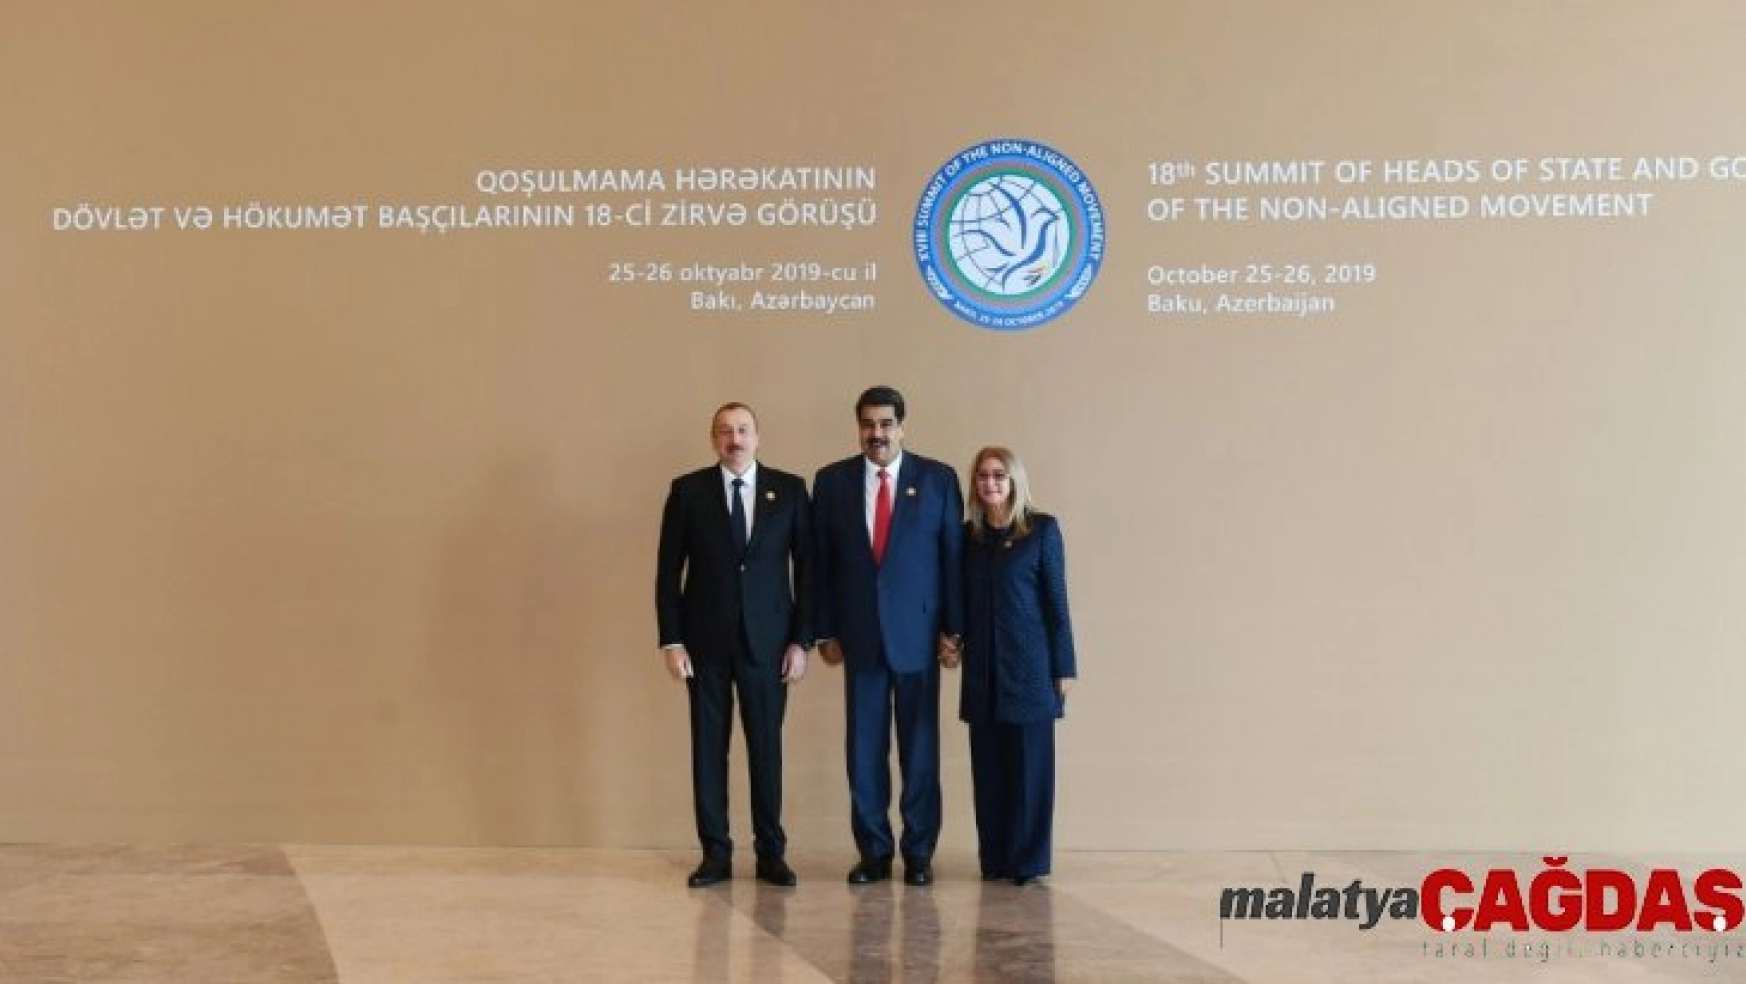 Dışişleri Bakanı Çavuşoğlu, Azerbaycan'da Bağlantısızlar Hareketi 18. Zirvesi'ne katıldı